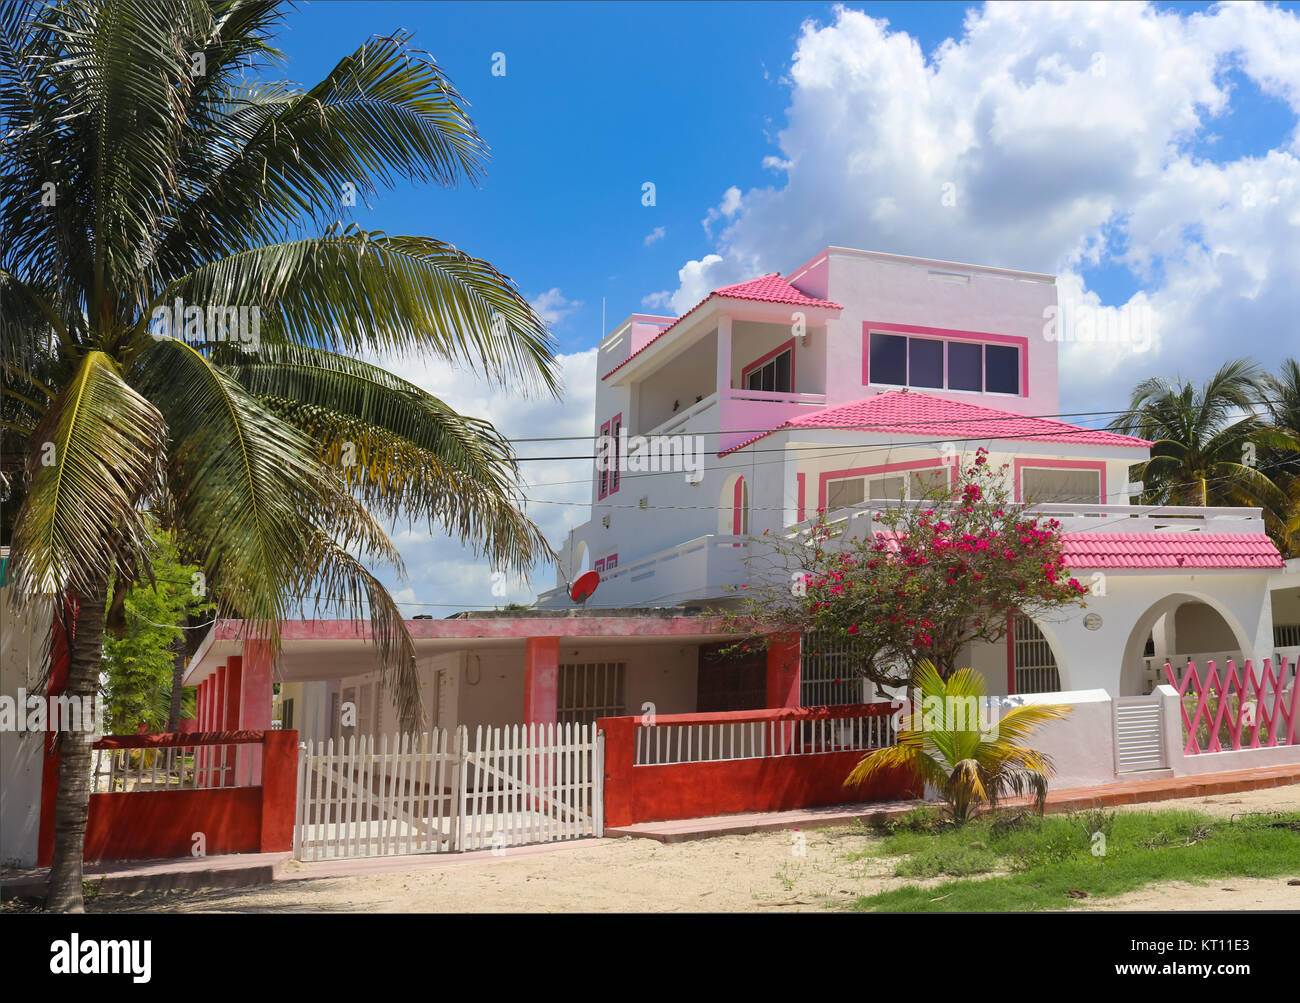 Lindo color rosa y blanco de tres plantas mexicanas casa con valla roja y palmeras y árboles florecientes contra un hermoso cielo azul con nubes esponjosas Foto de stock